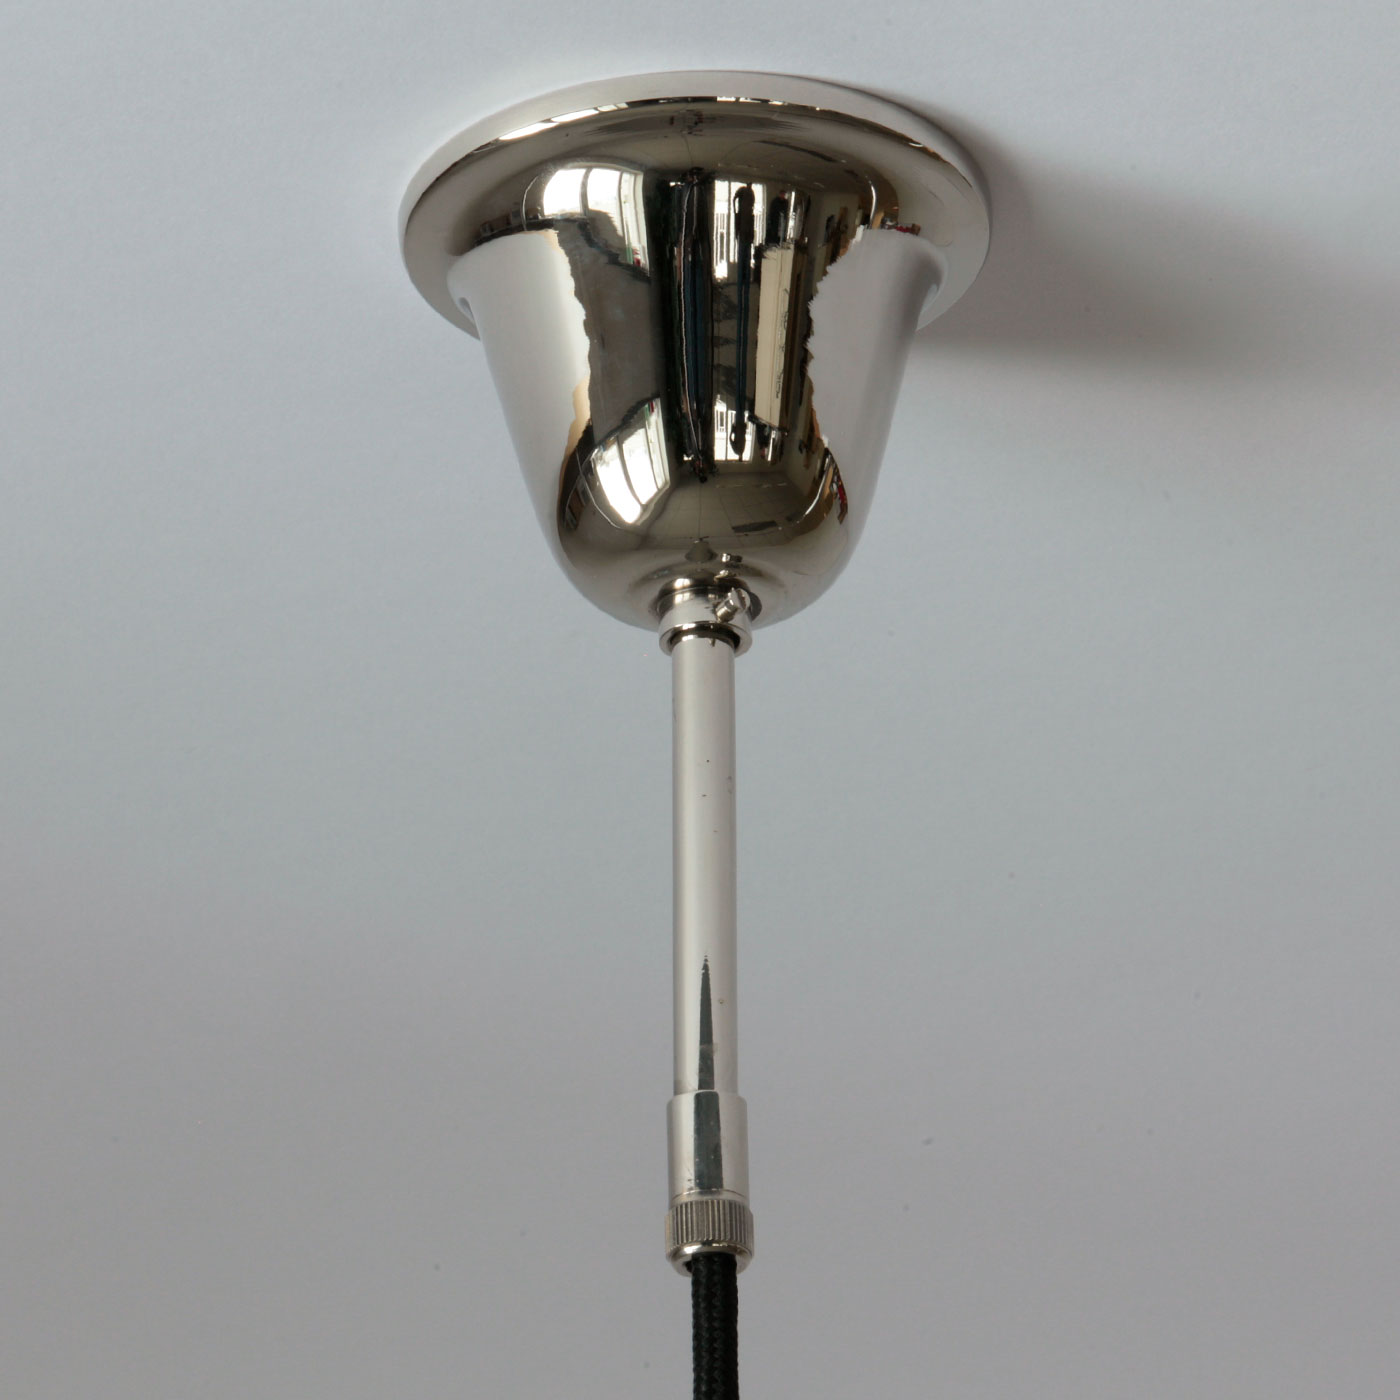 Kleine Pendelleuchte mit opalem Becher-Glasschirm (Ø 15 cm): Baldachin in der Messing-Oberfläche „Nickel glänzend“